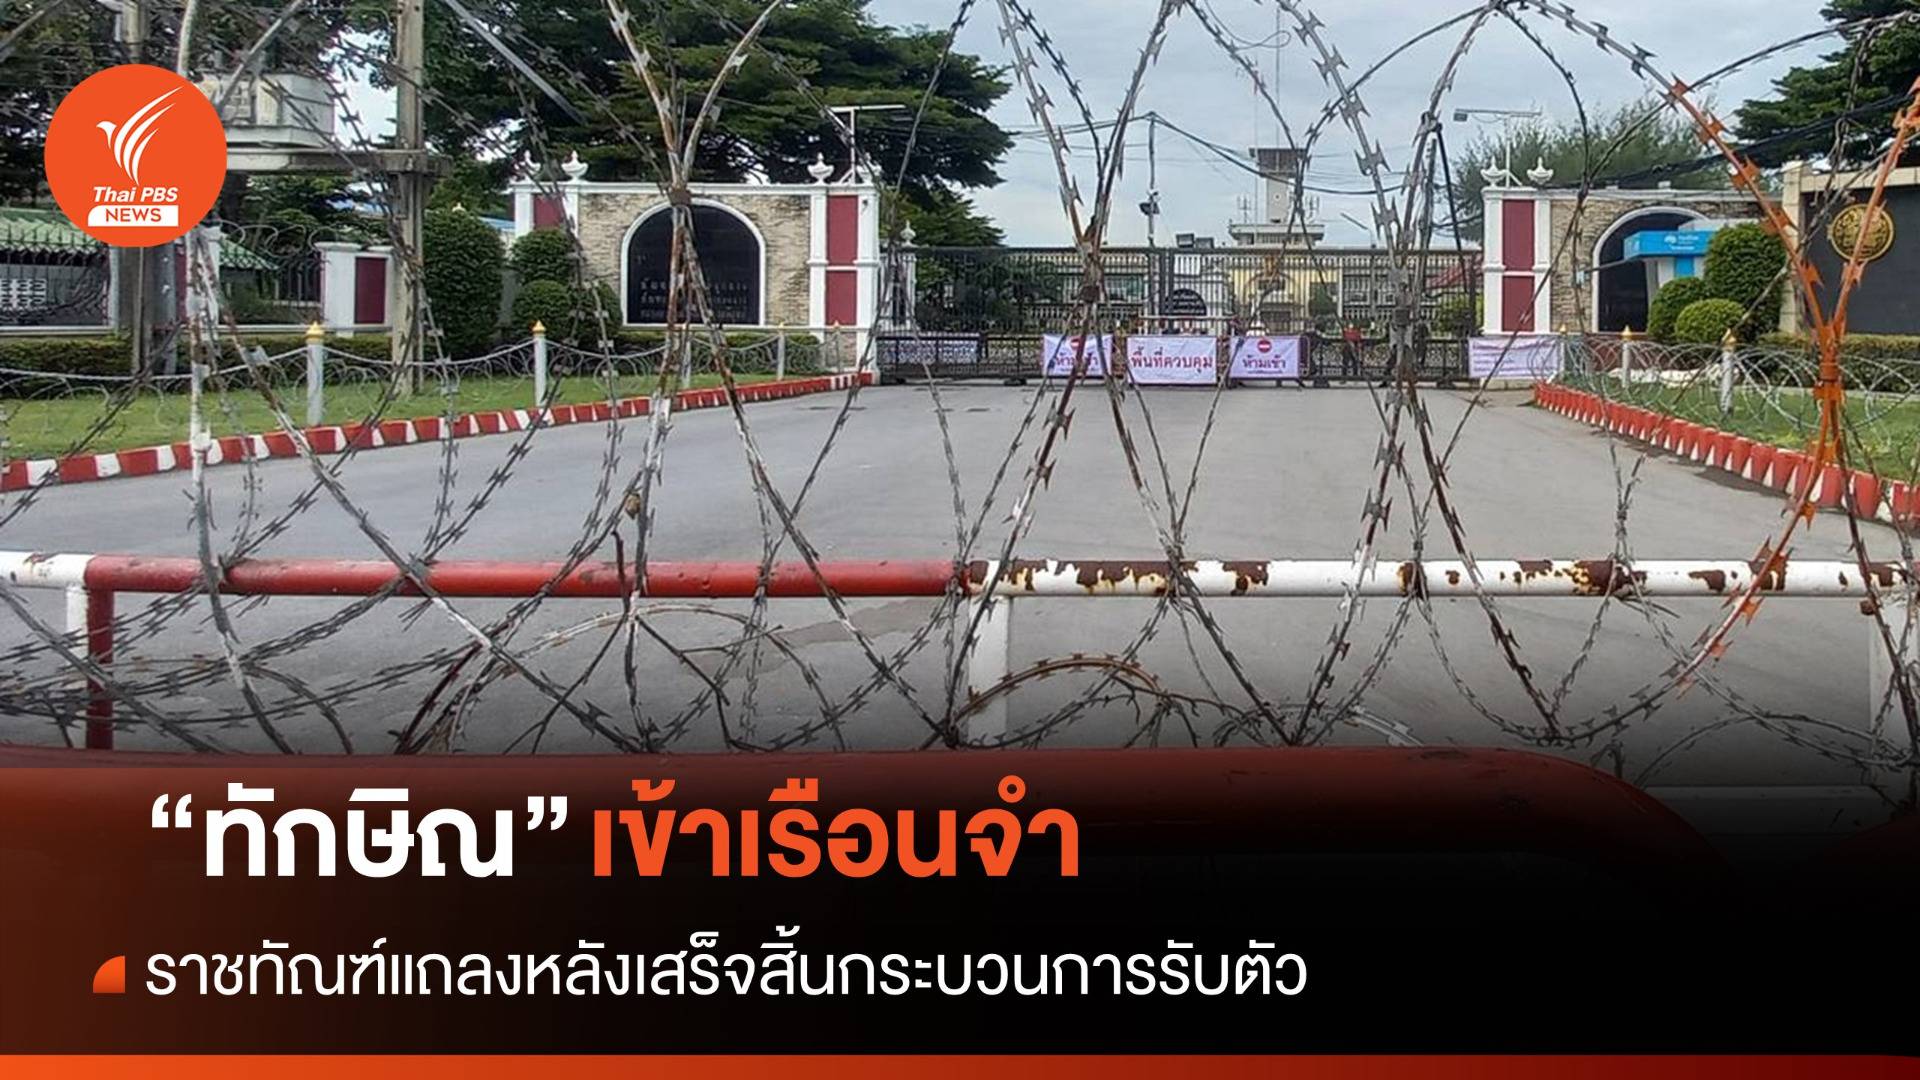 ทักษิณกลับไทย : คุมตัว "ทักษิณ" เข้าเรือนจำพิเศษกรุงเทพฯ